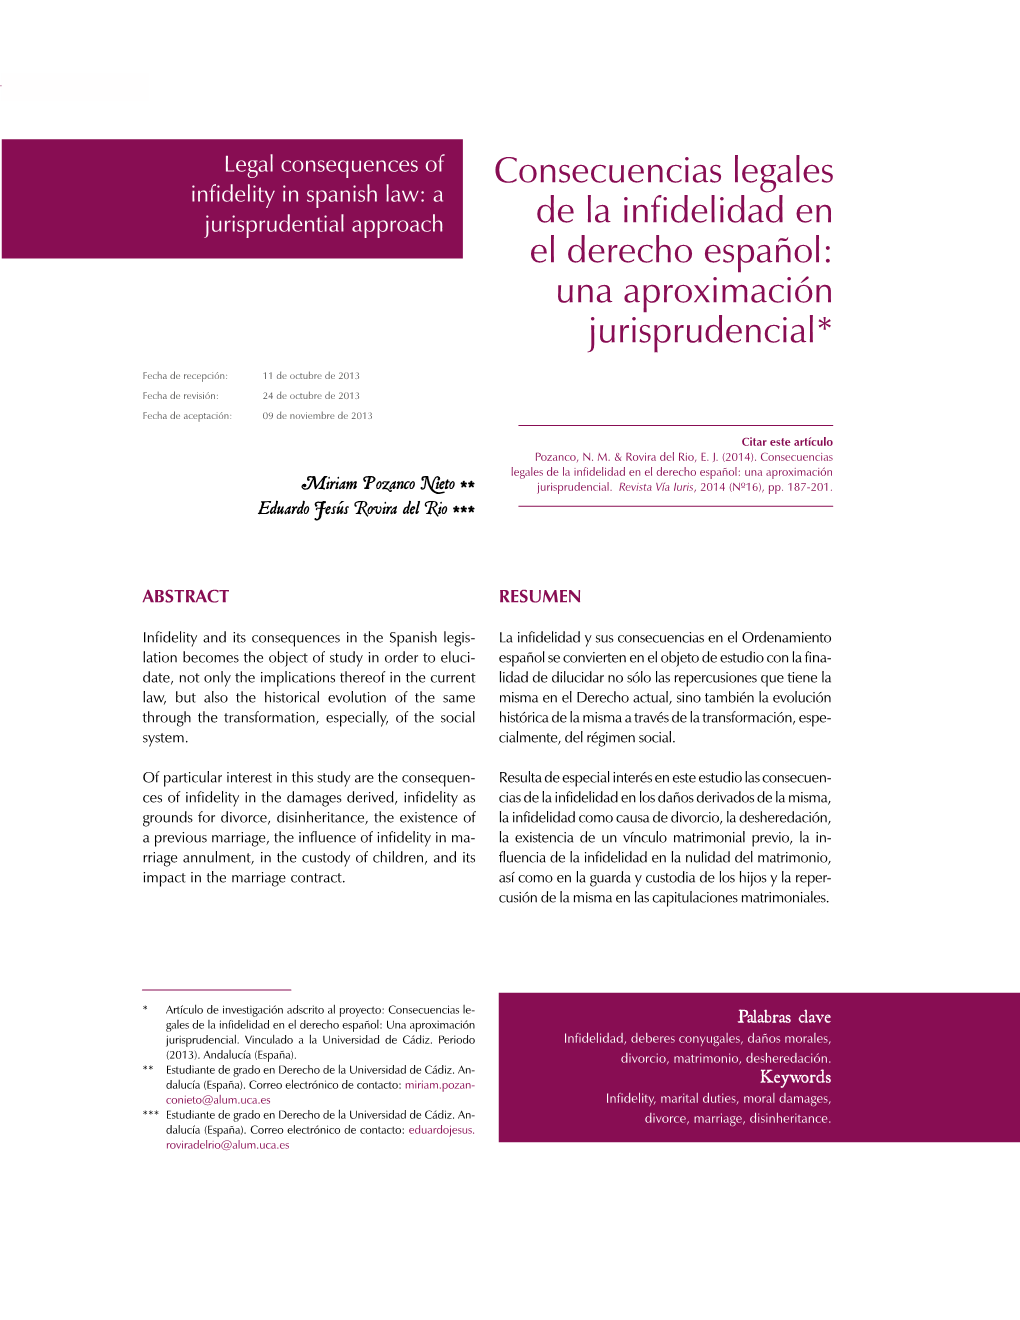 Consecuencias Legales De La Infidelidad En El Derecho Español: Una Aproximación Miriam Pozanco Nieto ** Jurisprudencial